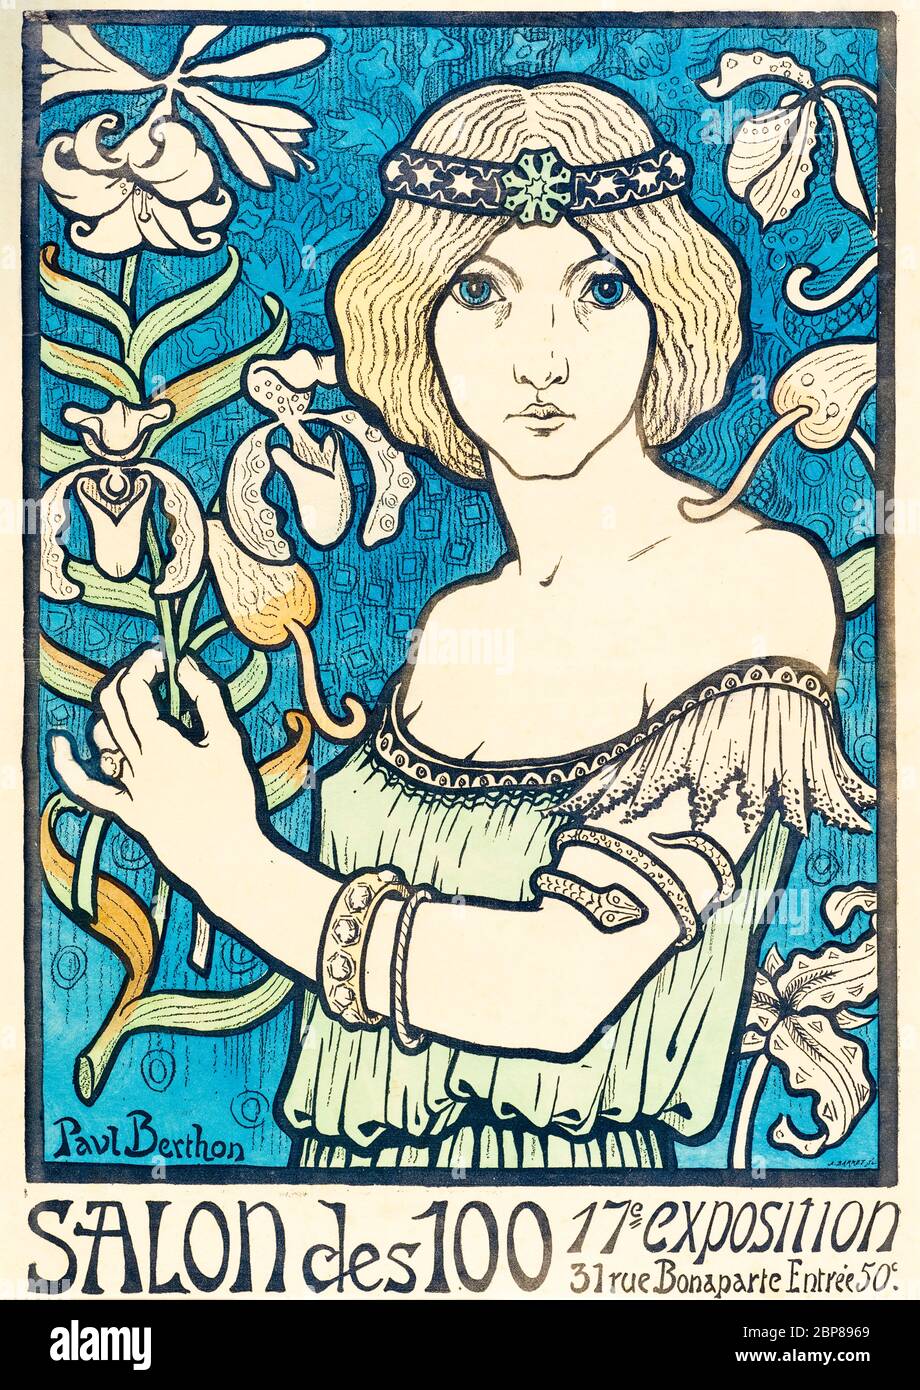 Paul Berthon, Salon des Cent: (Salon des 100), Art Nouveau poster, 1895 Stock Photo